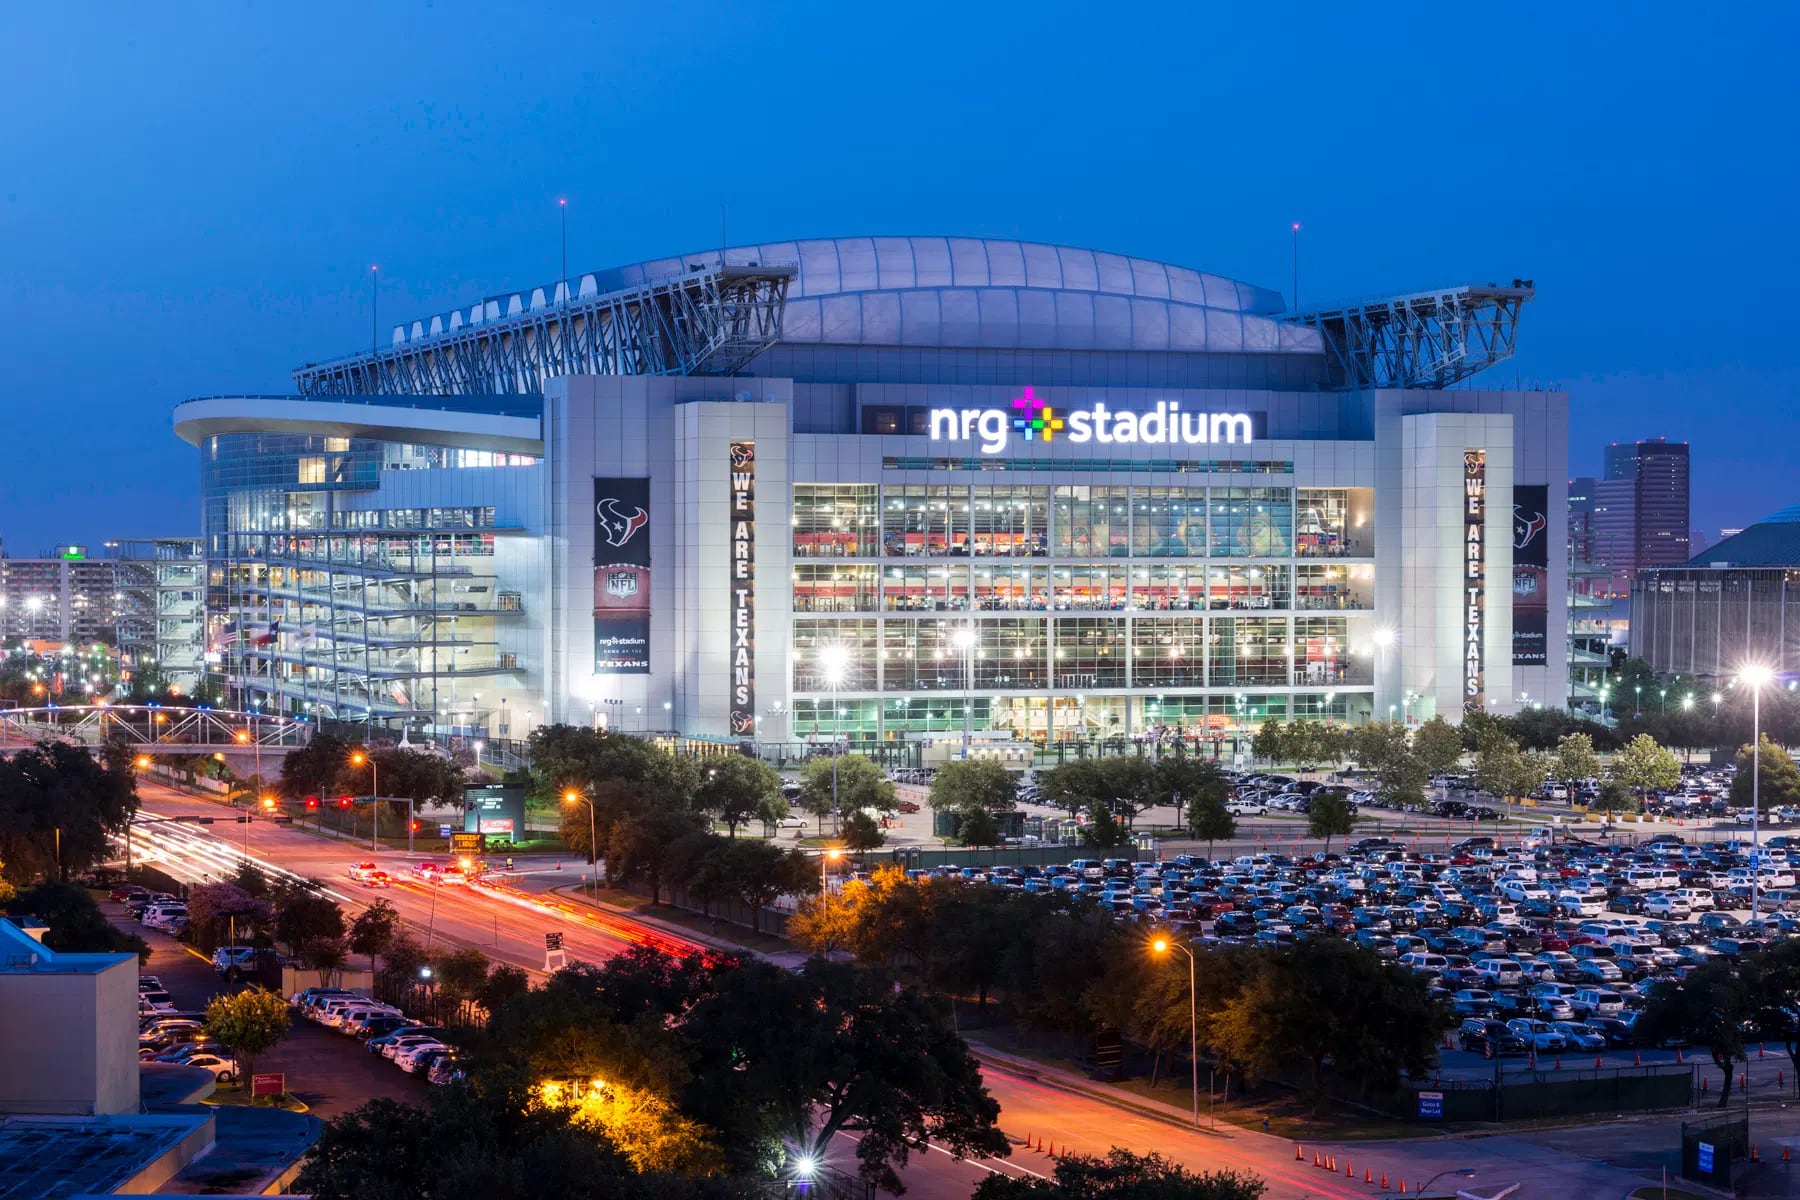 Este es el estadio de los Houston Texans en la NFL y tiene una capacidad para 75.000 personas - crédito Copa América